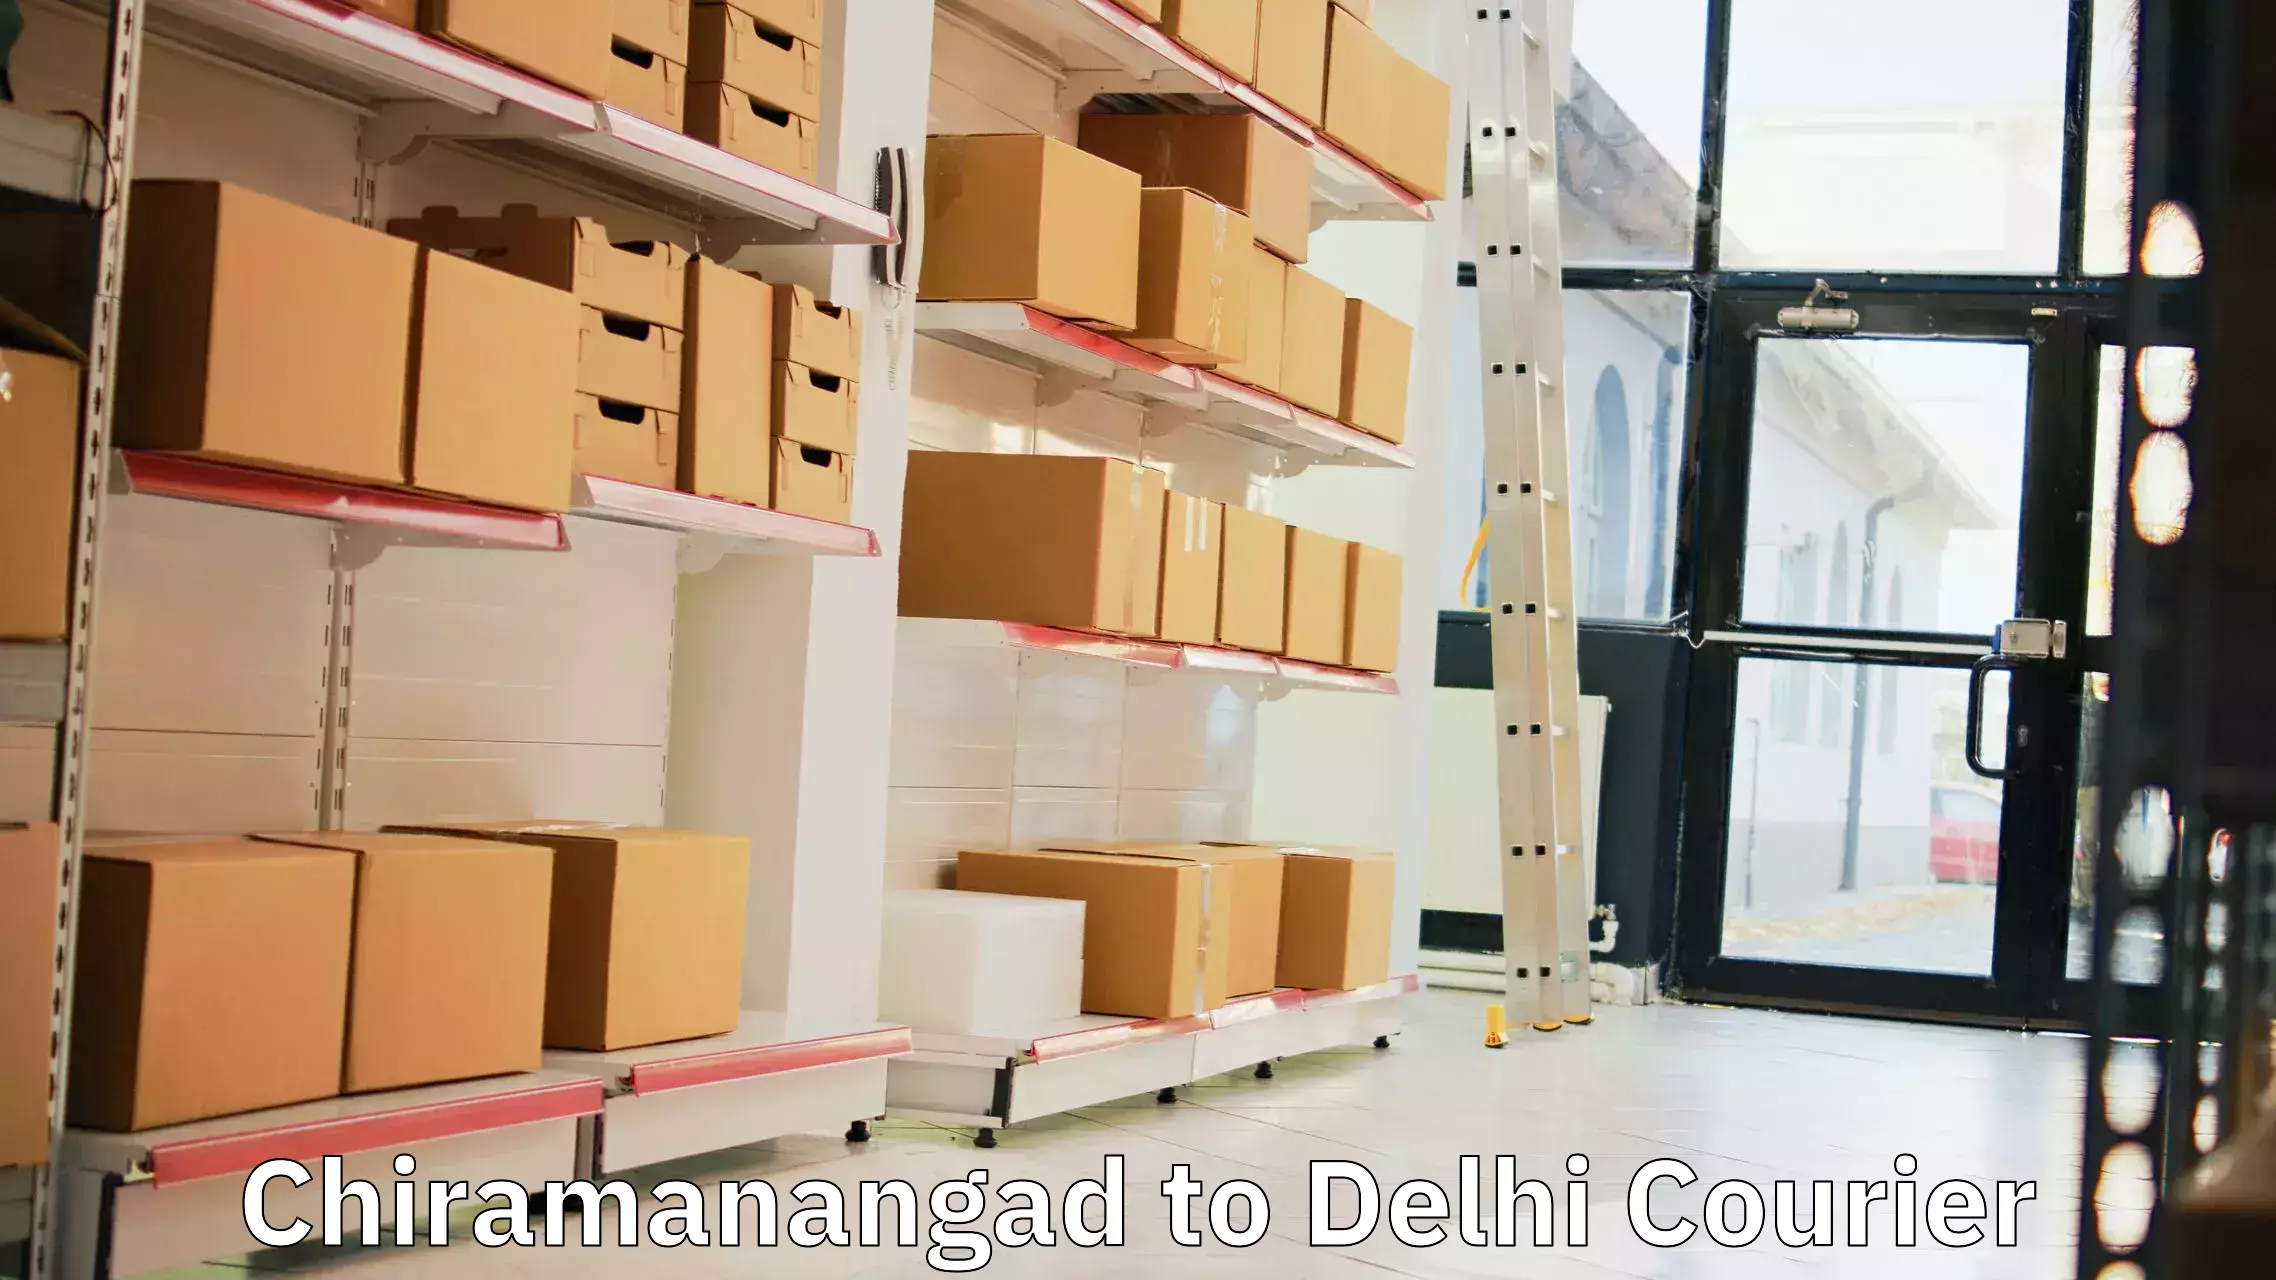 Fragile item shipping Chiramanangad to Delhi